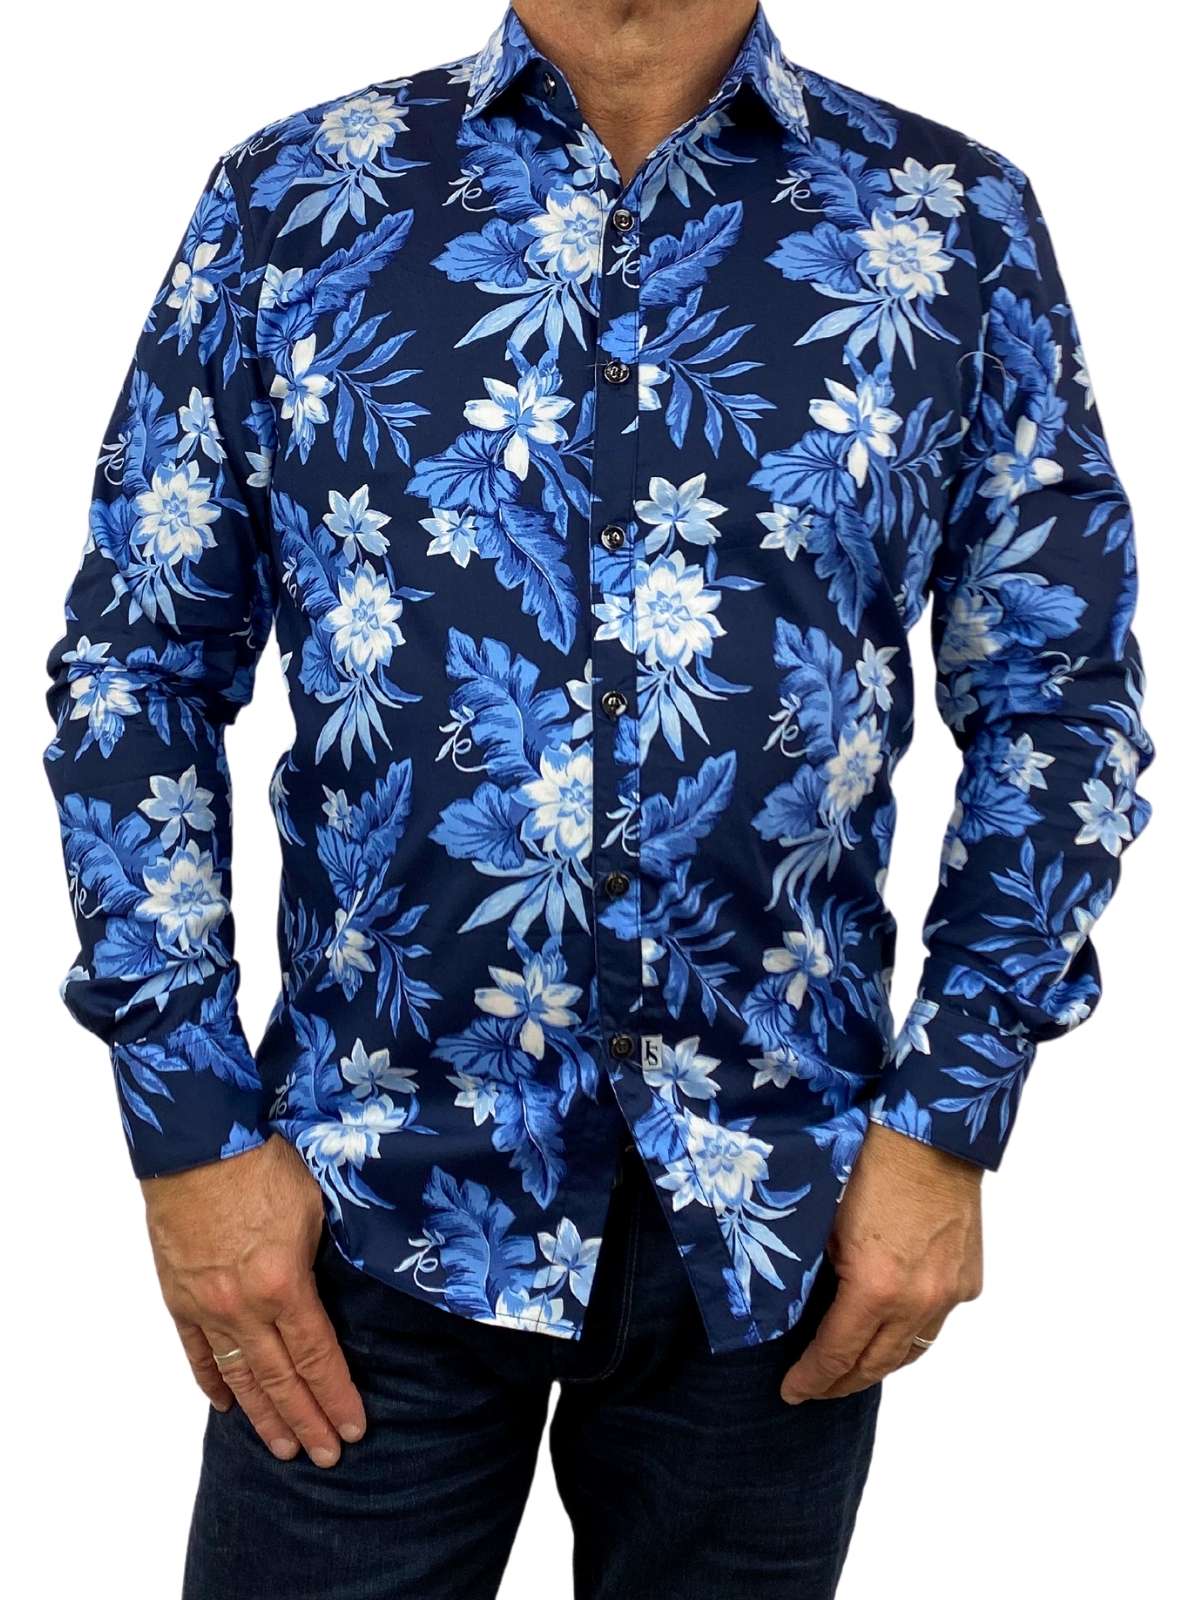 Aruba Floral Cotton L/S Shirt - Black/Blue